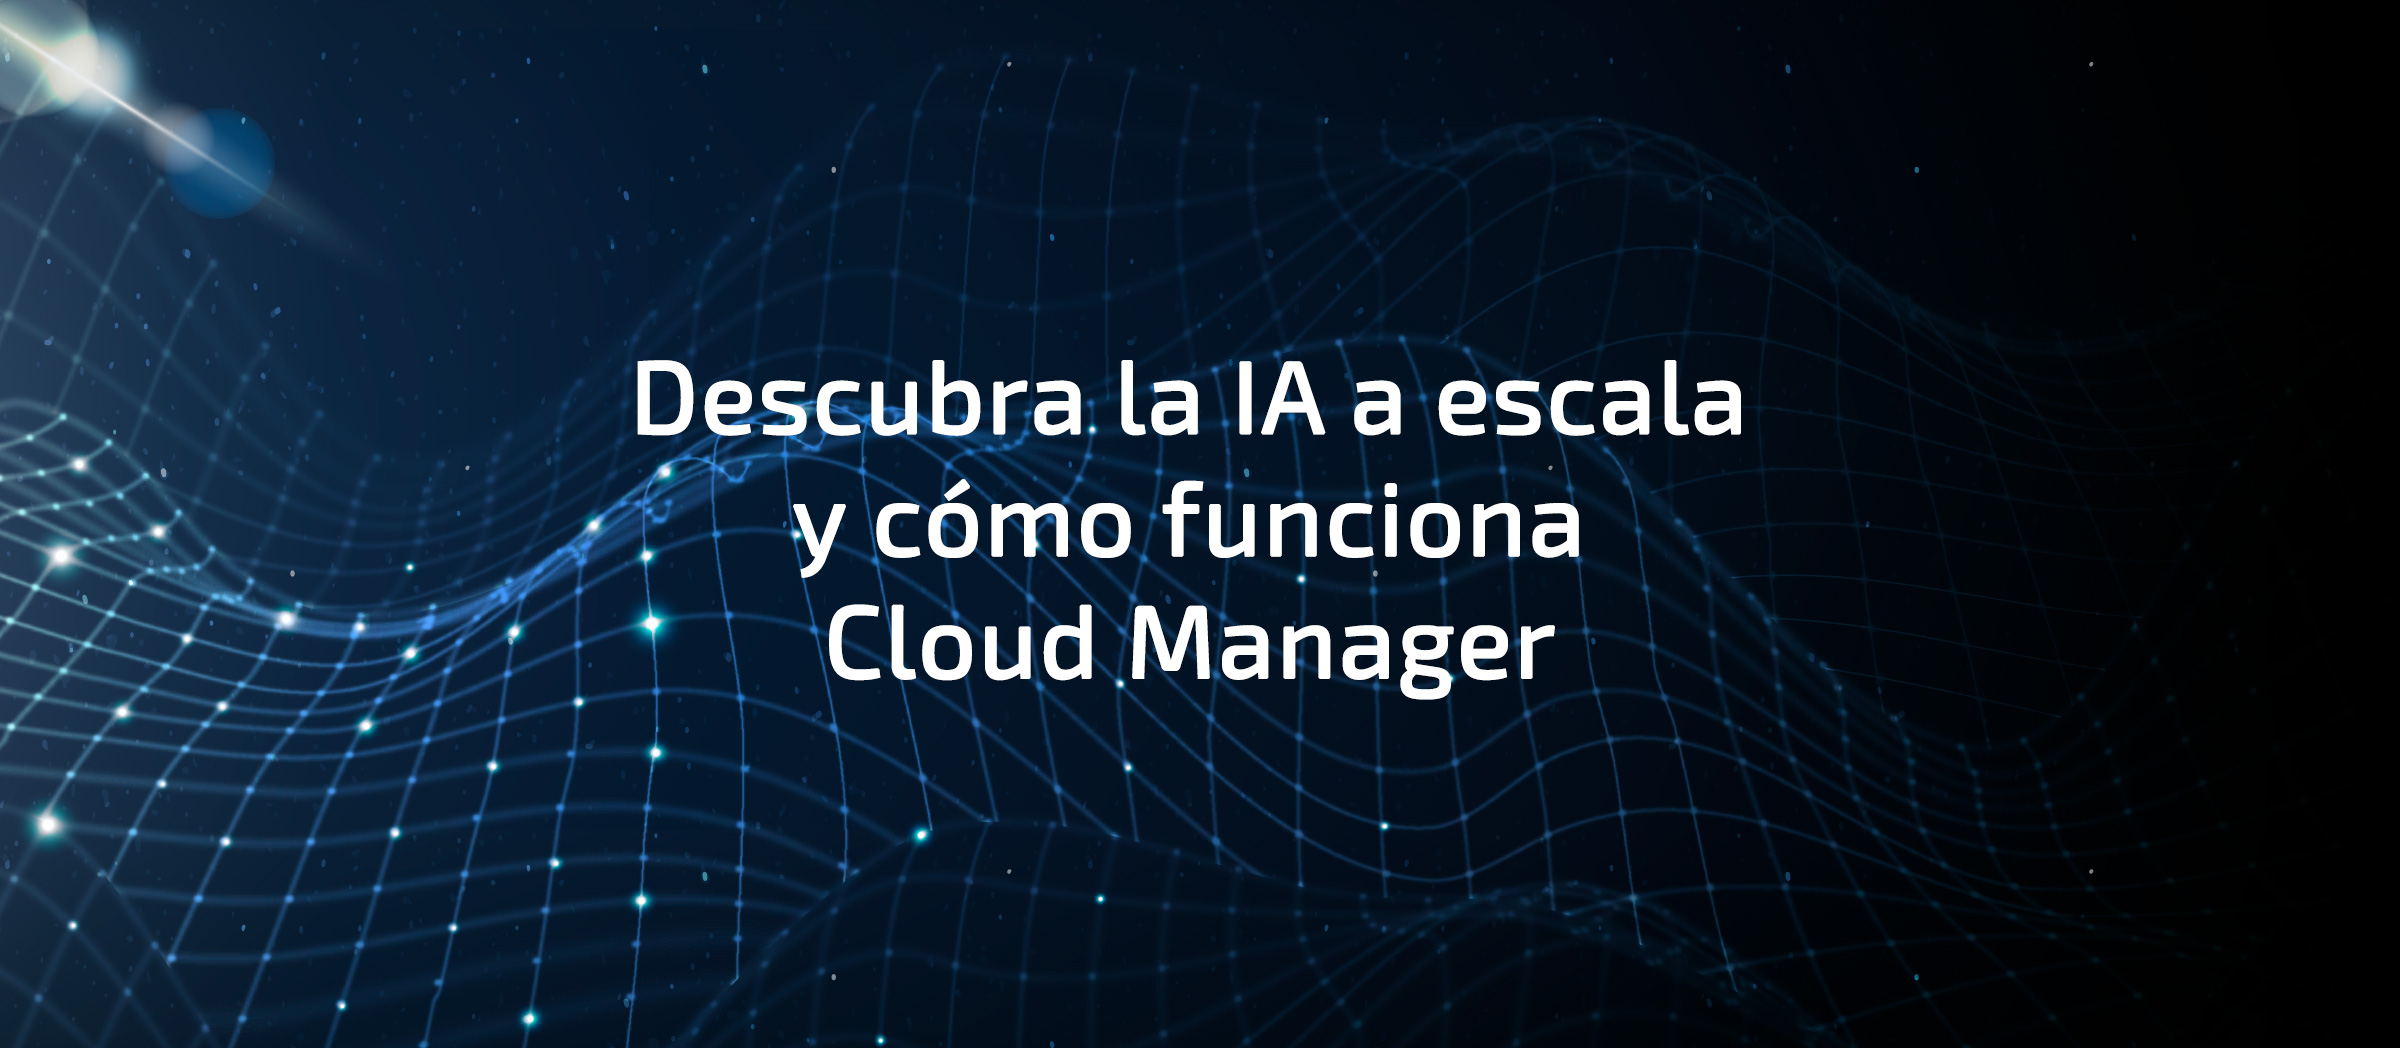 Descubra la IA a escala y cómo funciona Cloud Manager